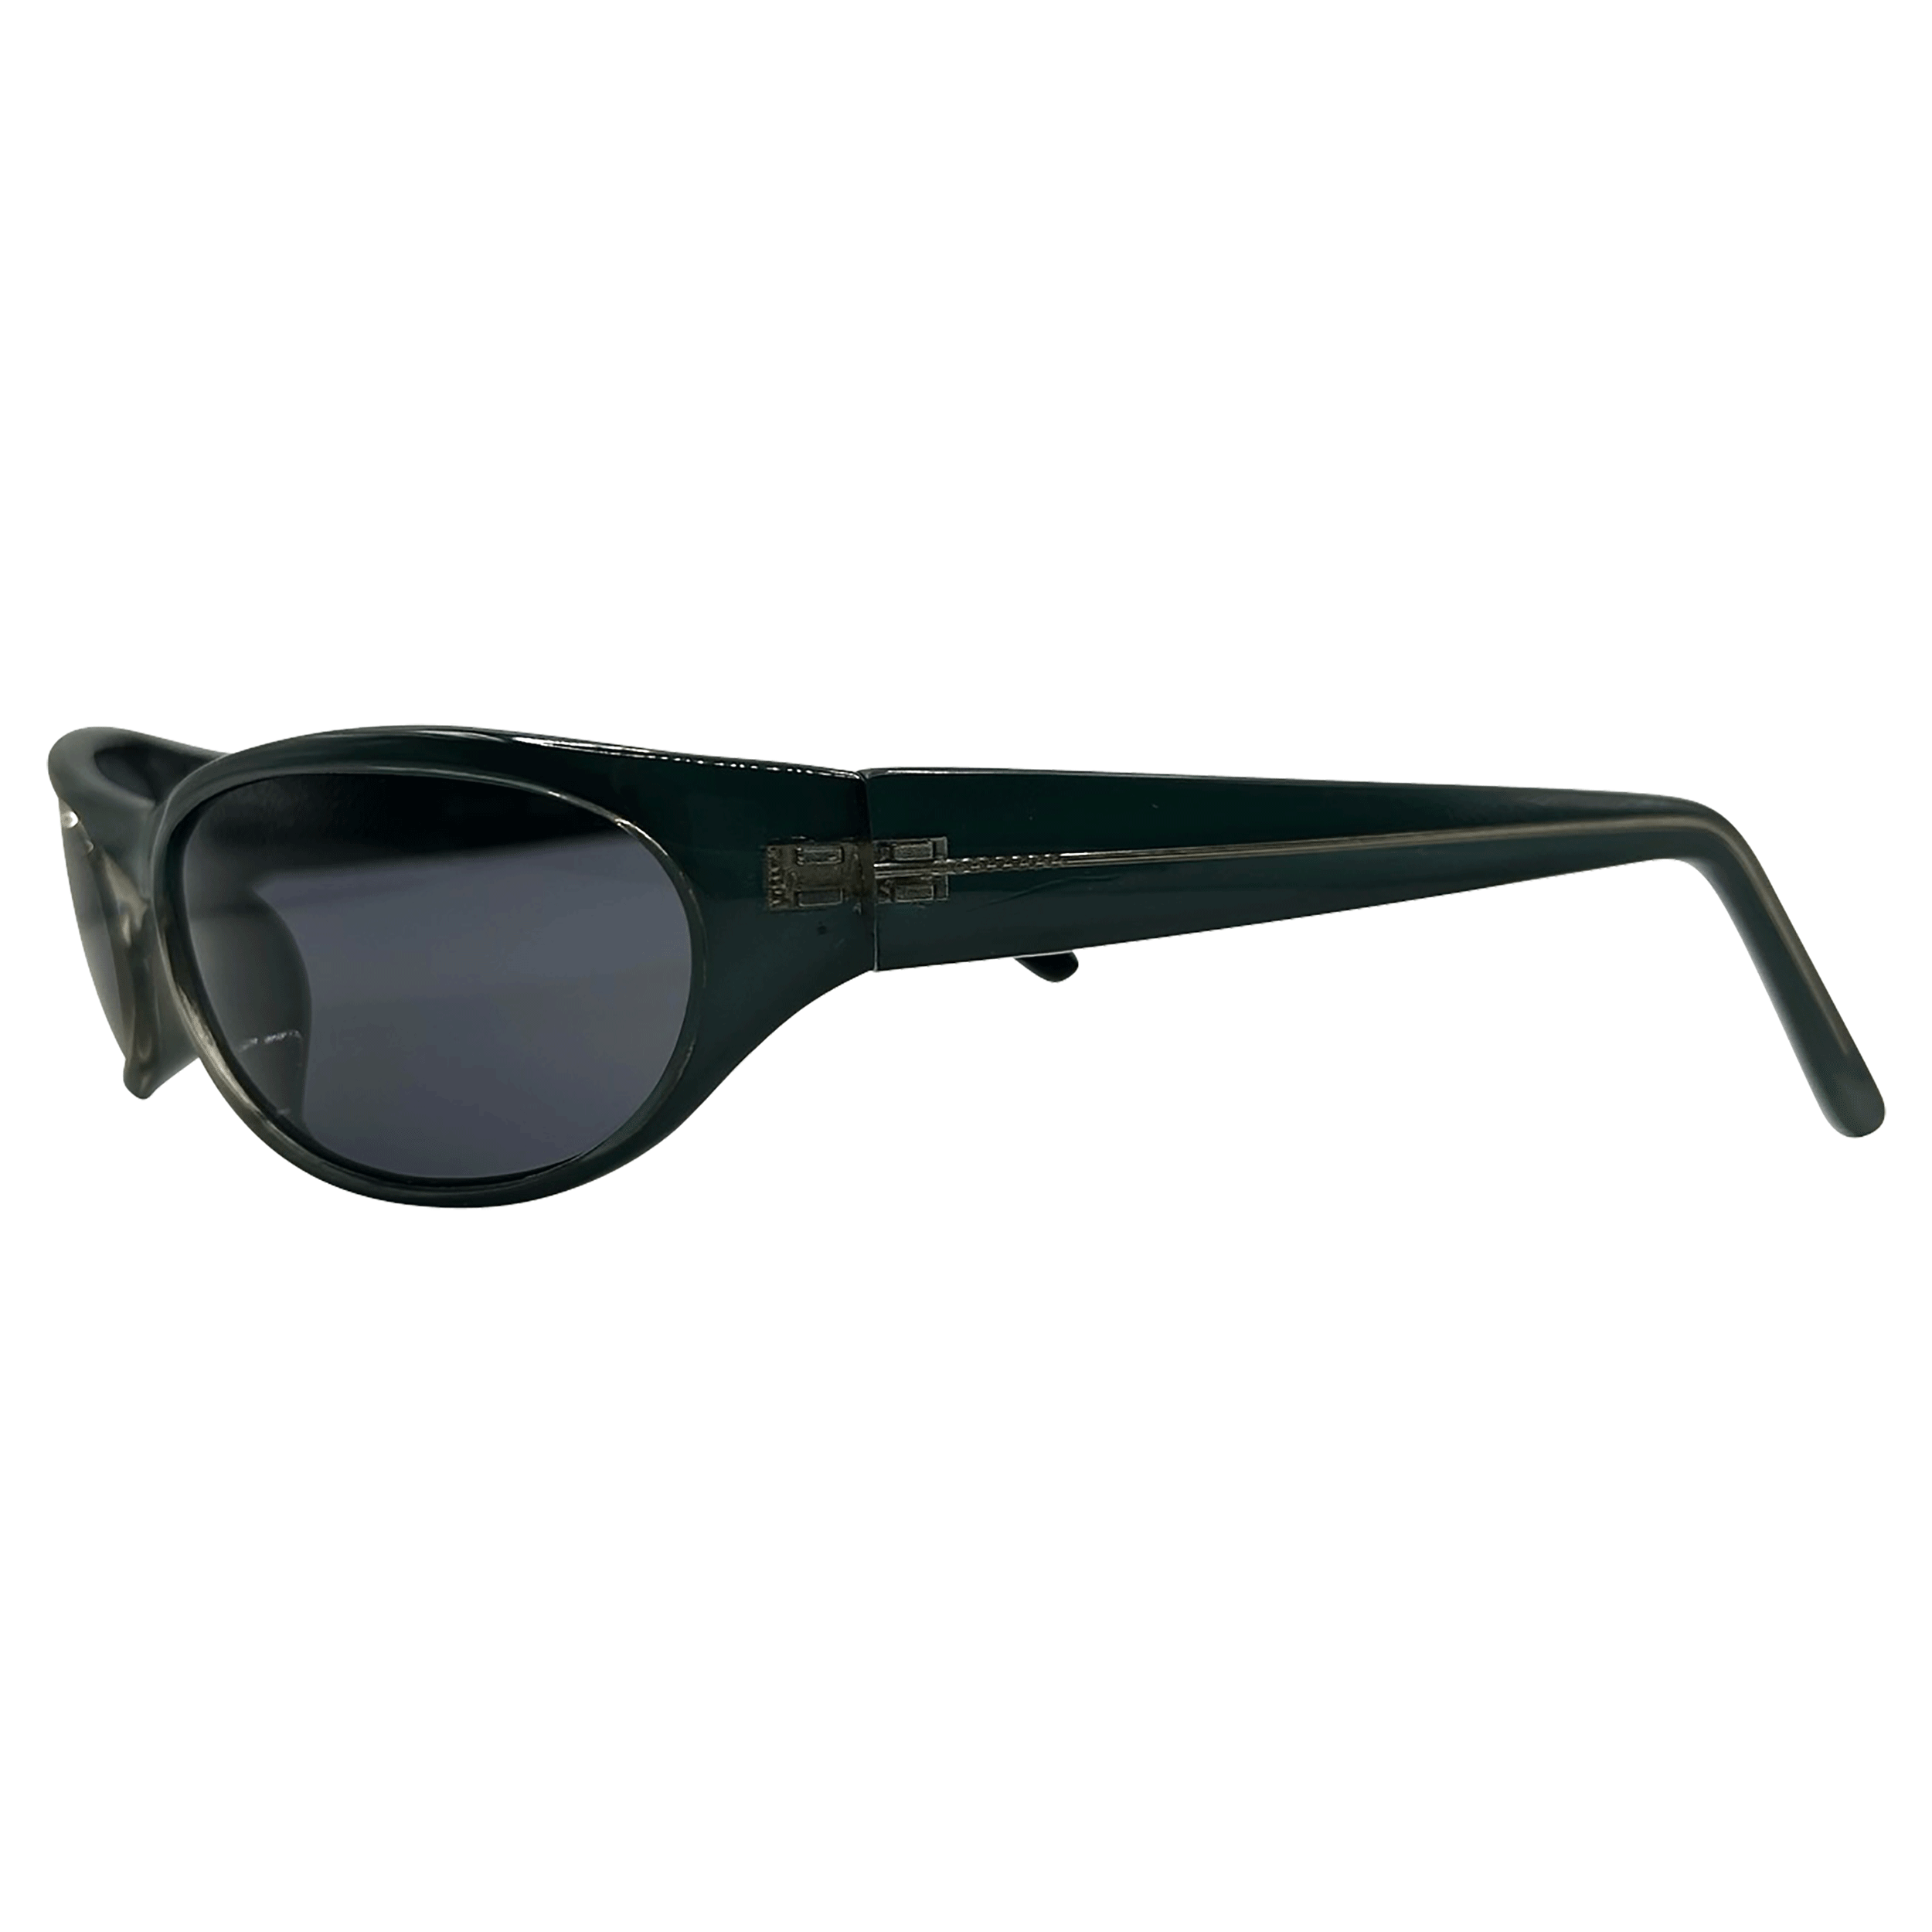 JAYD Oval Vintage Sunglasses